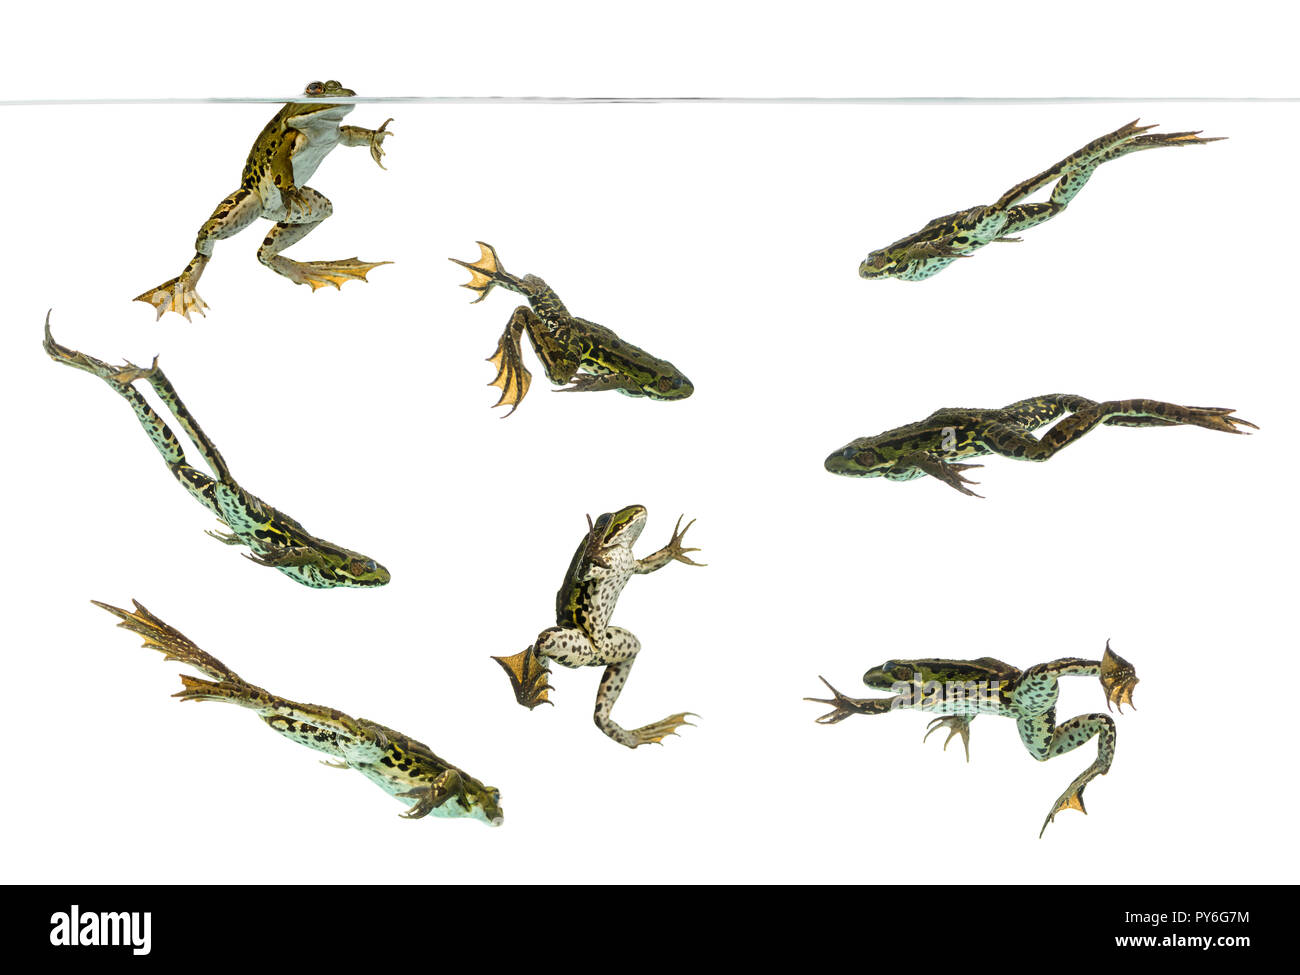 Composizione delle rane commestibili nuotare sotto l'acqua linea, Pelophylax kl. esculentus, isolato su bianco Foto Stock